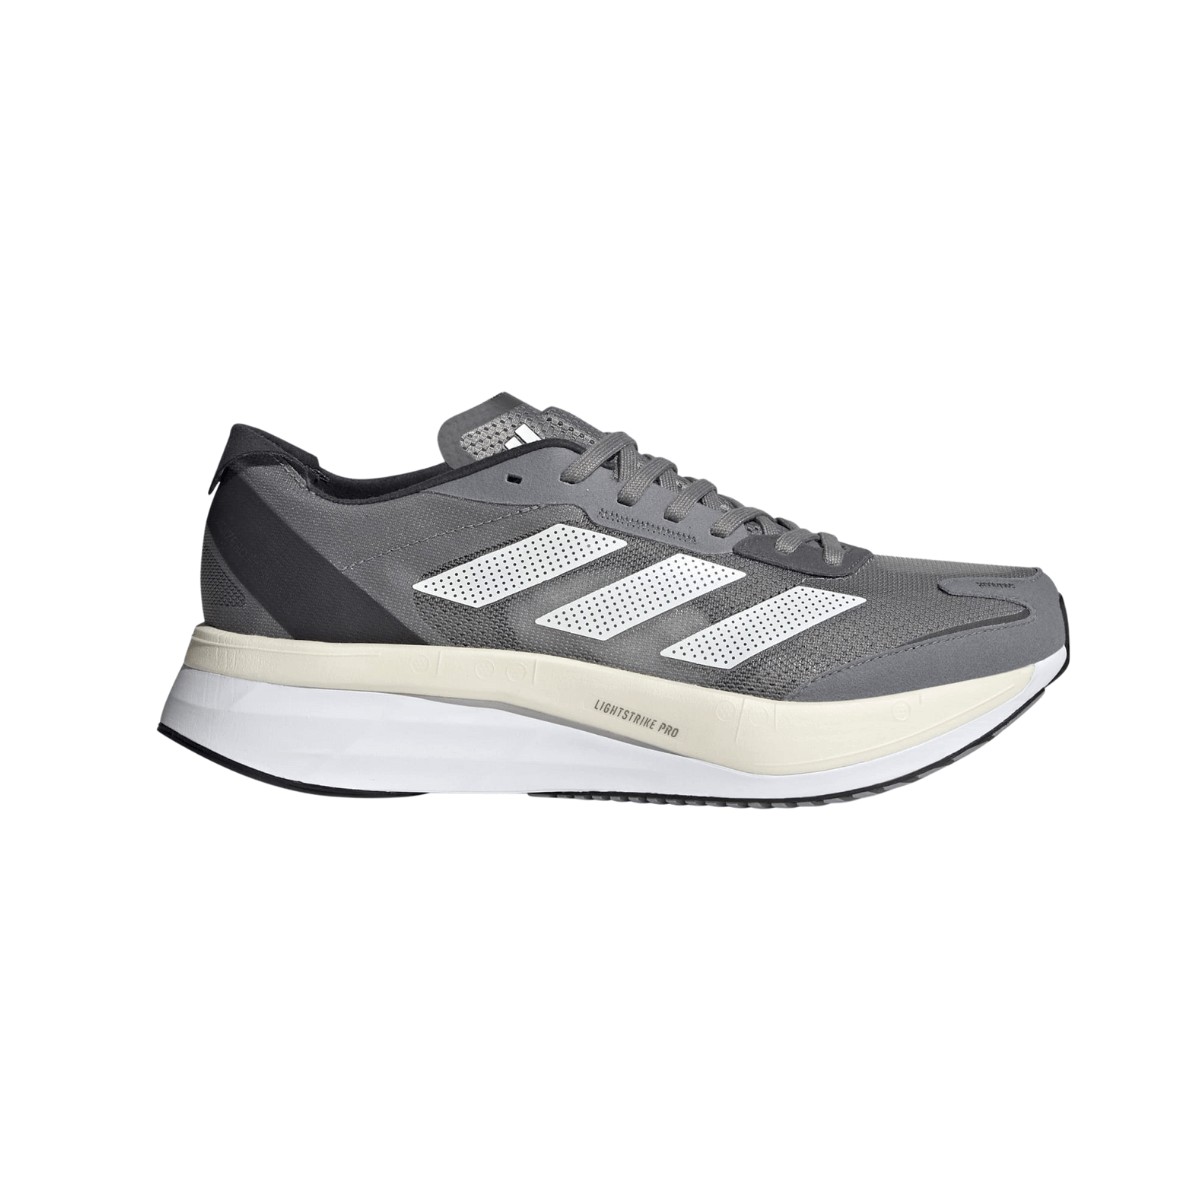 Adidas Adizero Boston 11 Shoes Gray White AW22, Size UK 8